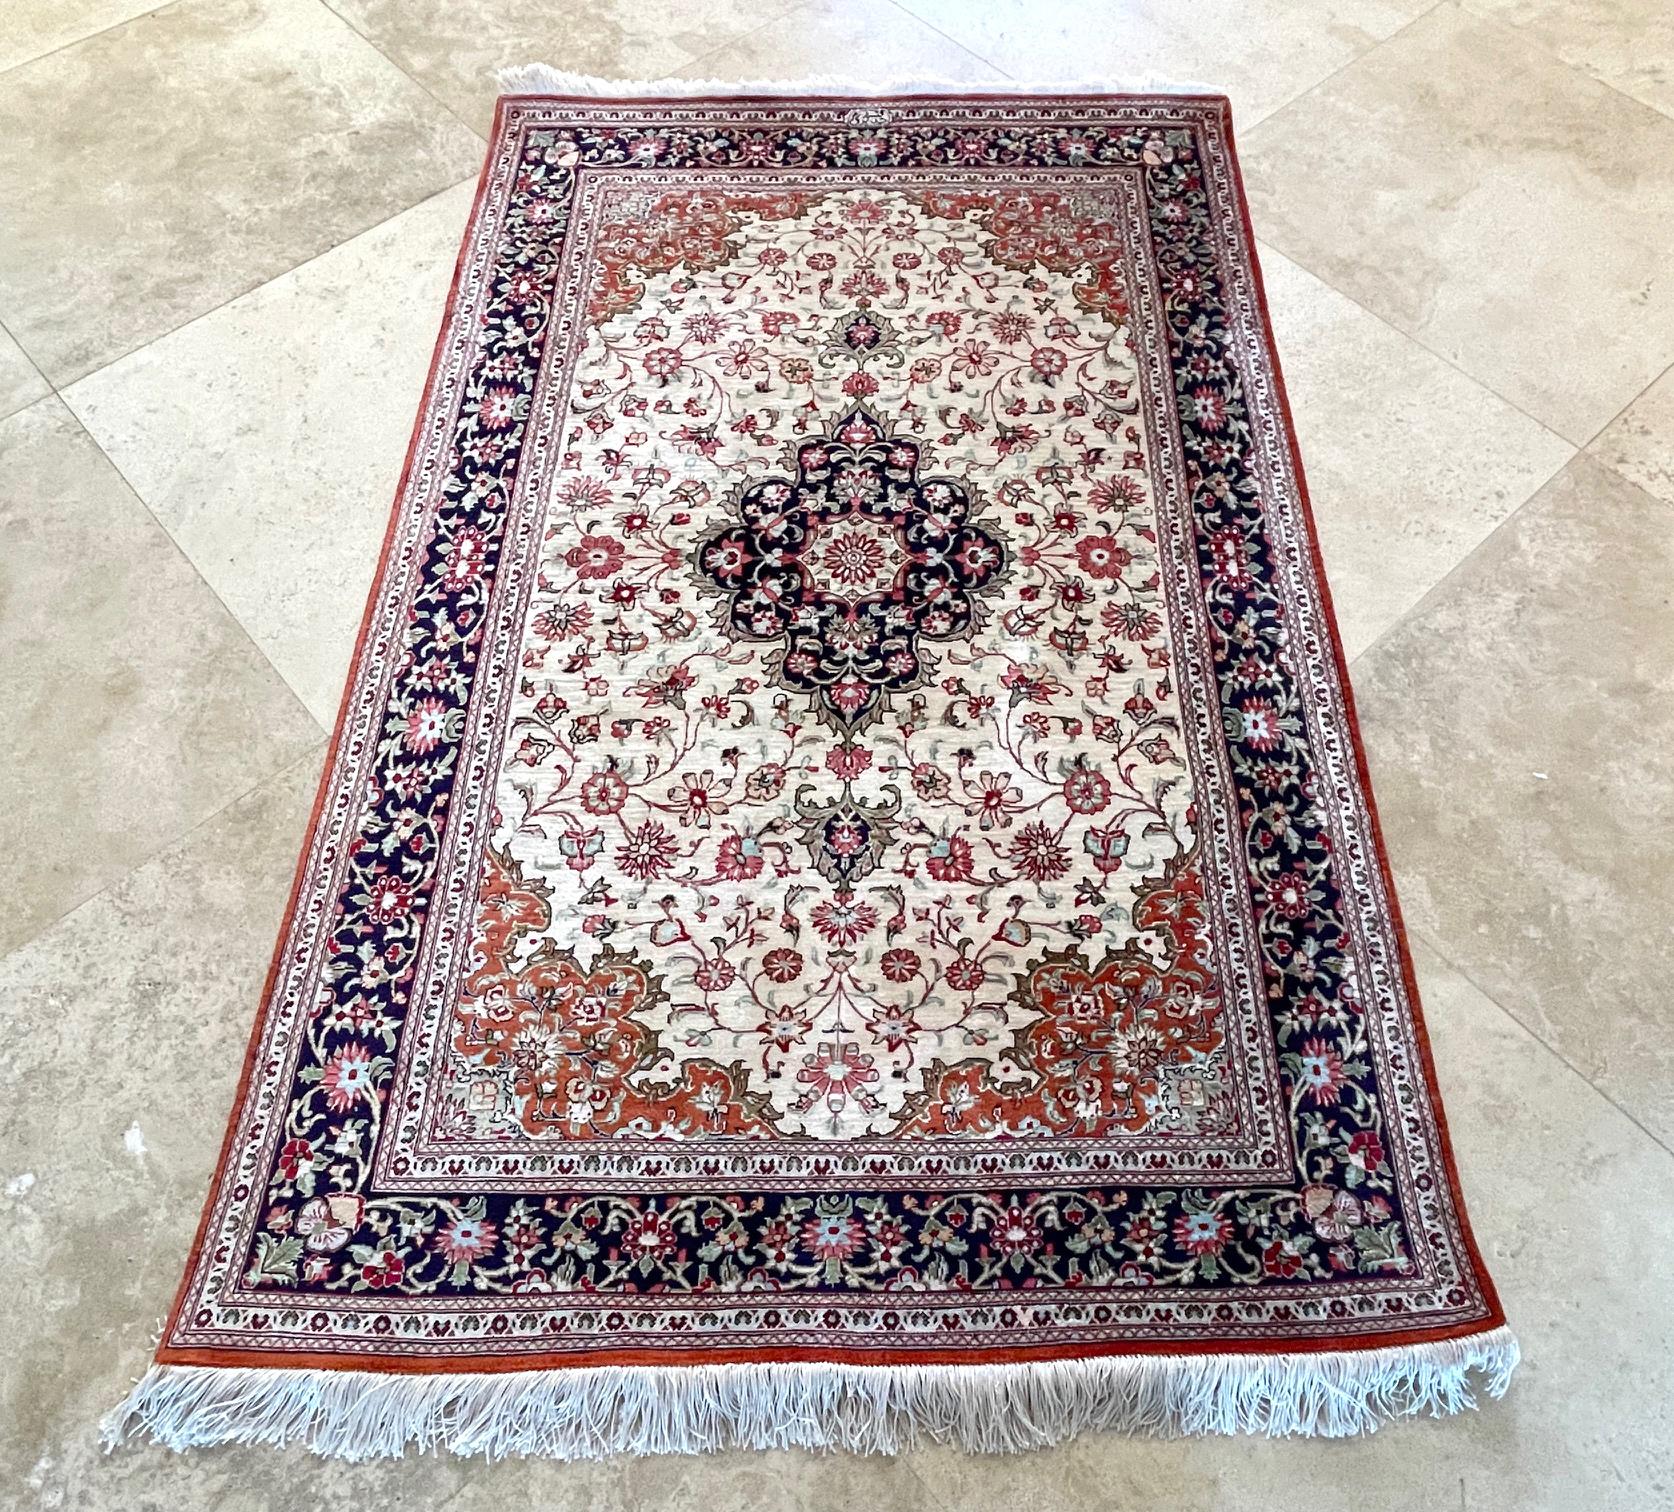 Dieser authentische Teppich stammt aus Qum, Iran, das in den letzten 100 Jahren ein Zentrum der Teppichweberei war, mit hochwertigen und teuren handgefertigten Teppichen. Dieses atemberaubende Stück hat einen Seidenflor und ein Seidenfundament von